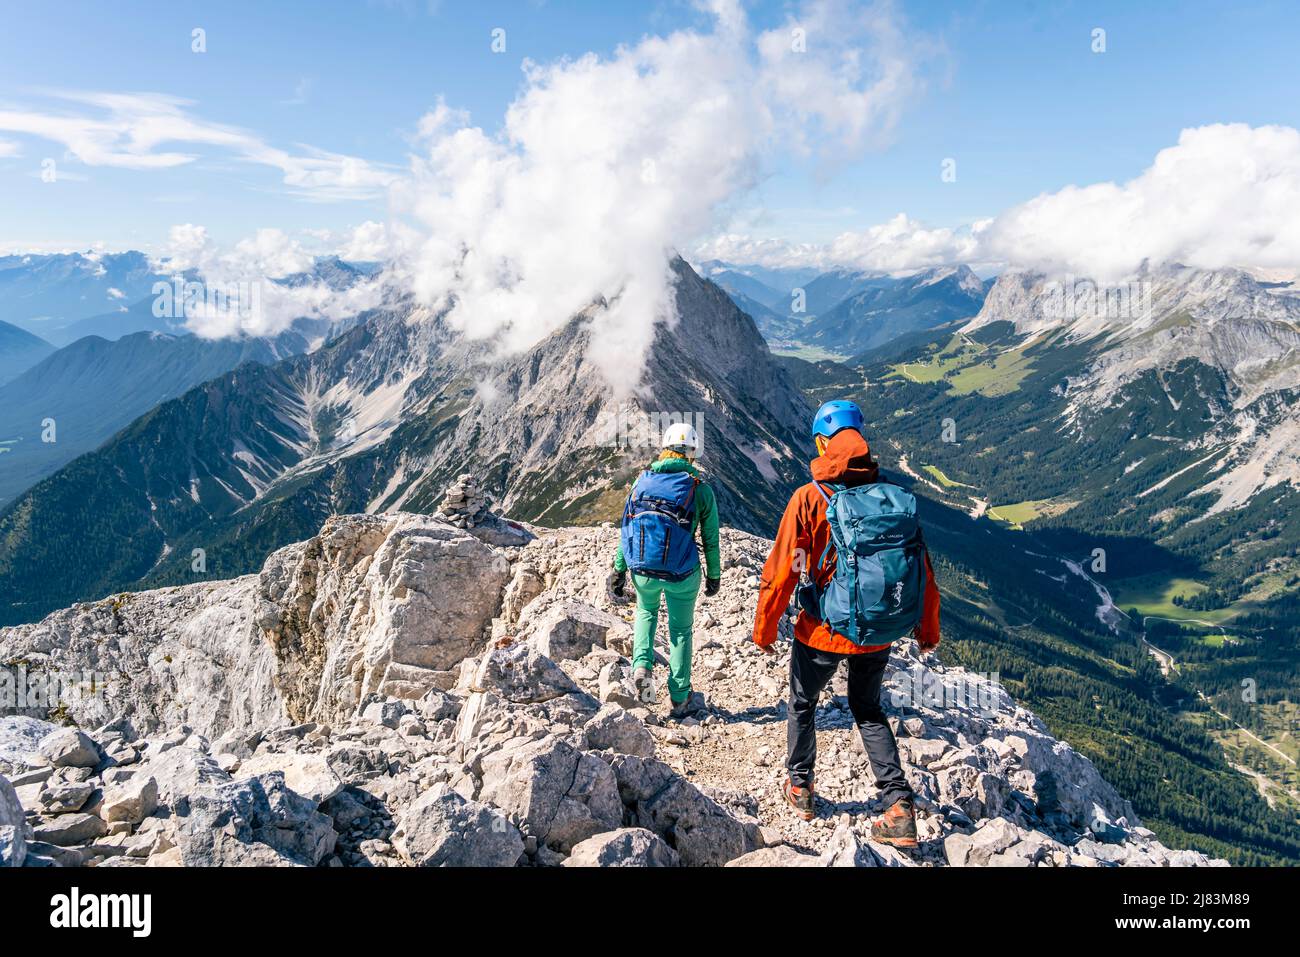 Randonneur avec casque d'escalade sur une crête rocheuse abrupte, promenade en crête, Hohe Munde, Mieminger Gebirge, Tyrol, Autriche Banque D'Images